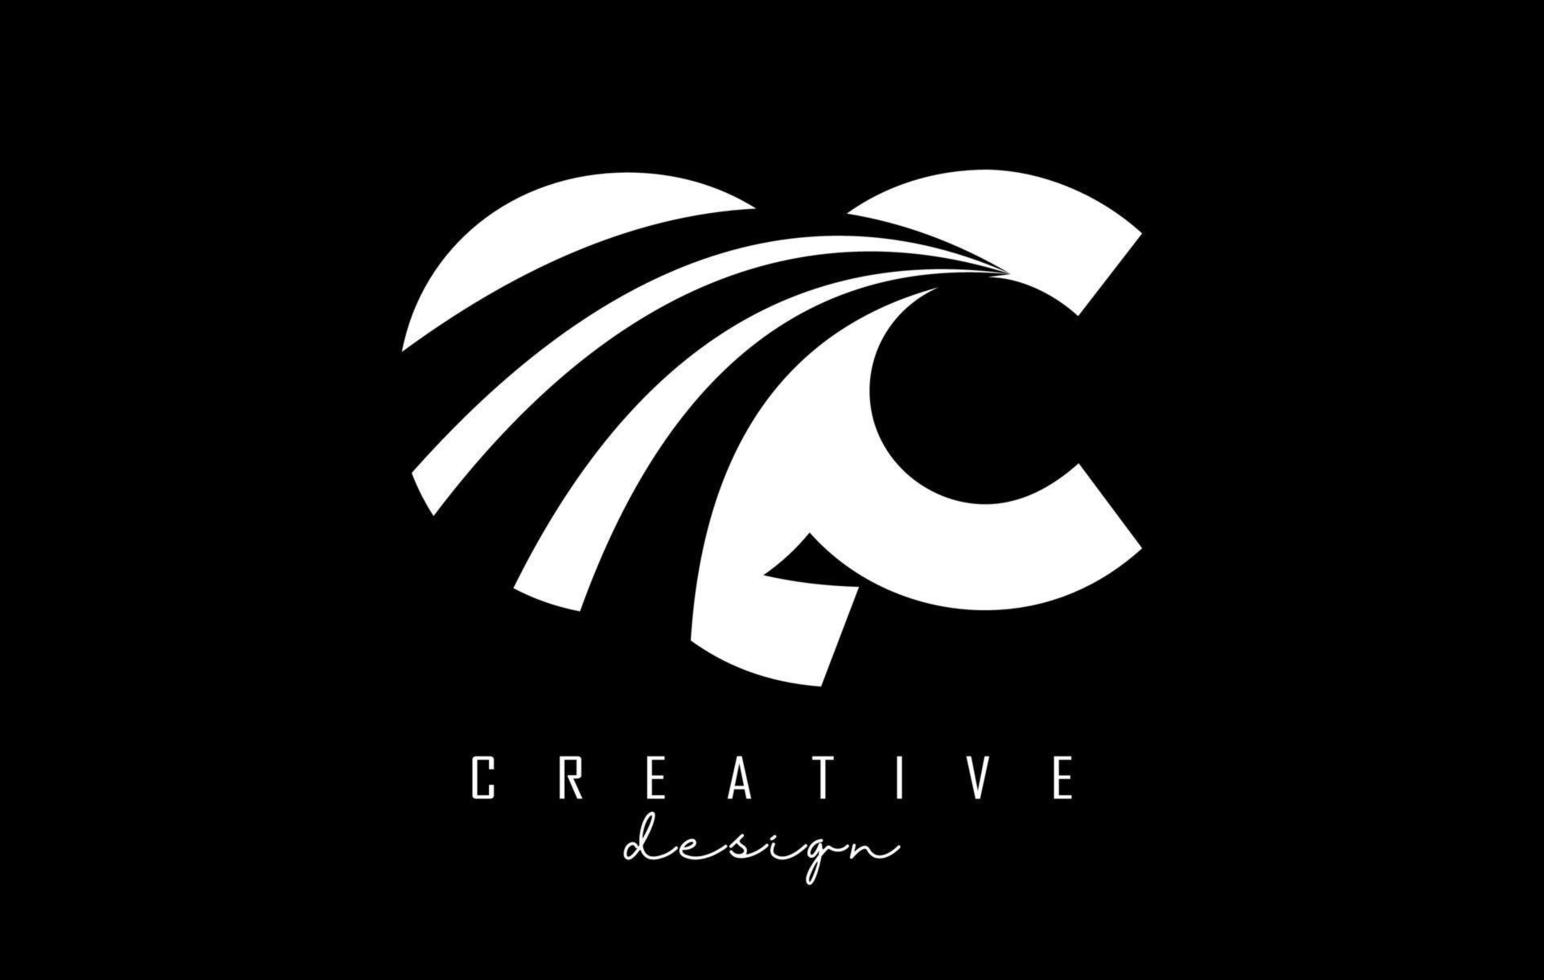 logotipo creativo de letras blancas qc qc con líneas principales y diseño de concepto de carretera. letras con diseño geométrico. vector